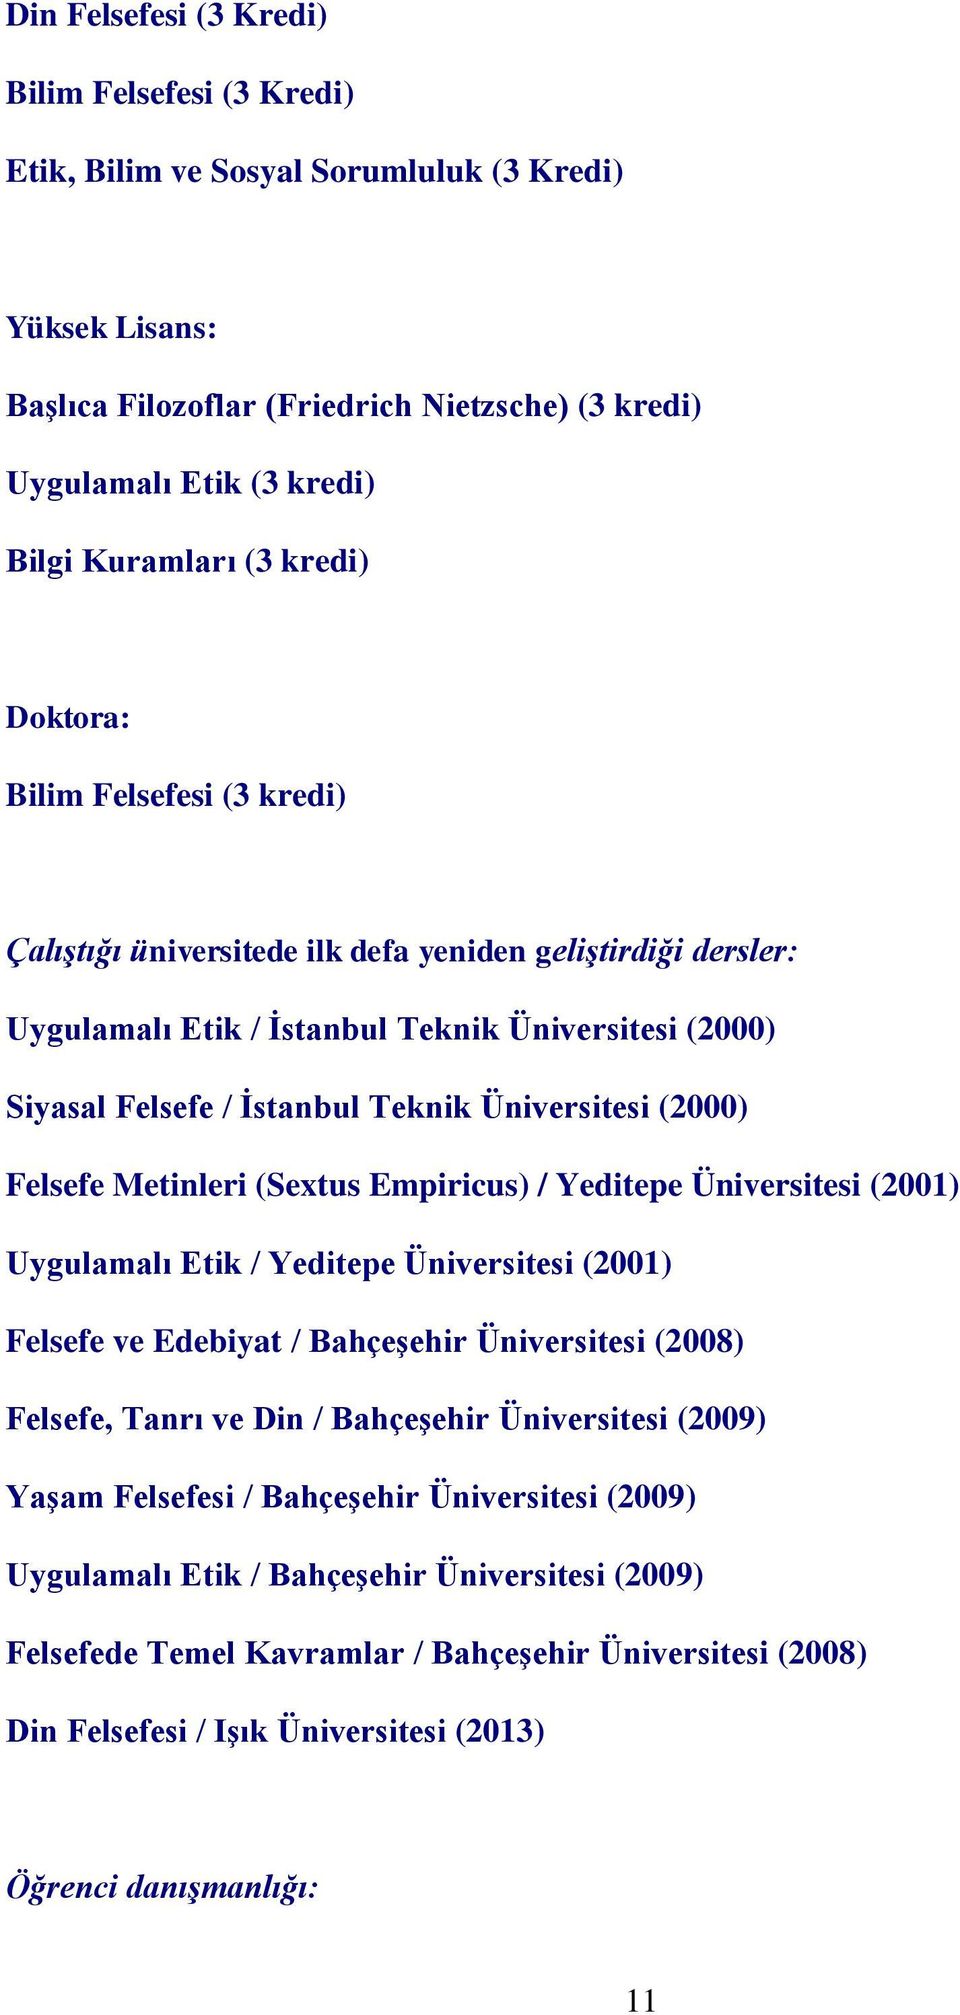 Teknik Üniversitesi (2000) Felsefe Metinleri (Sextus Empiricus) / Yeditepe Üniversitesi (2001) Uygulamalı Etik / Yeditepe Üniversitesi (2001) Felsefe ve Edebiyat / Bahçeşehir Üniversitesi (2008)